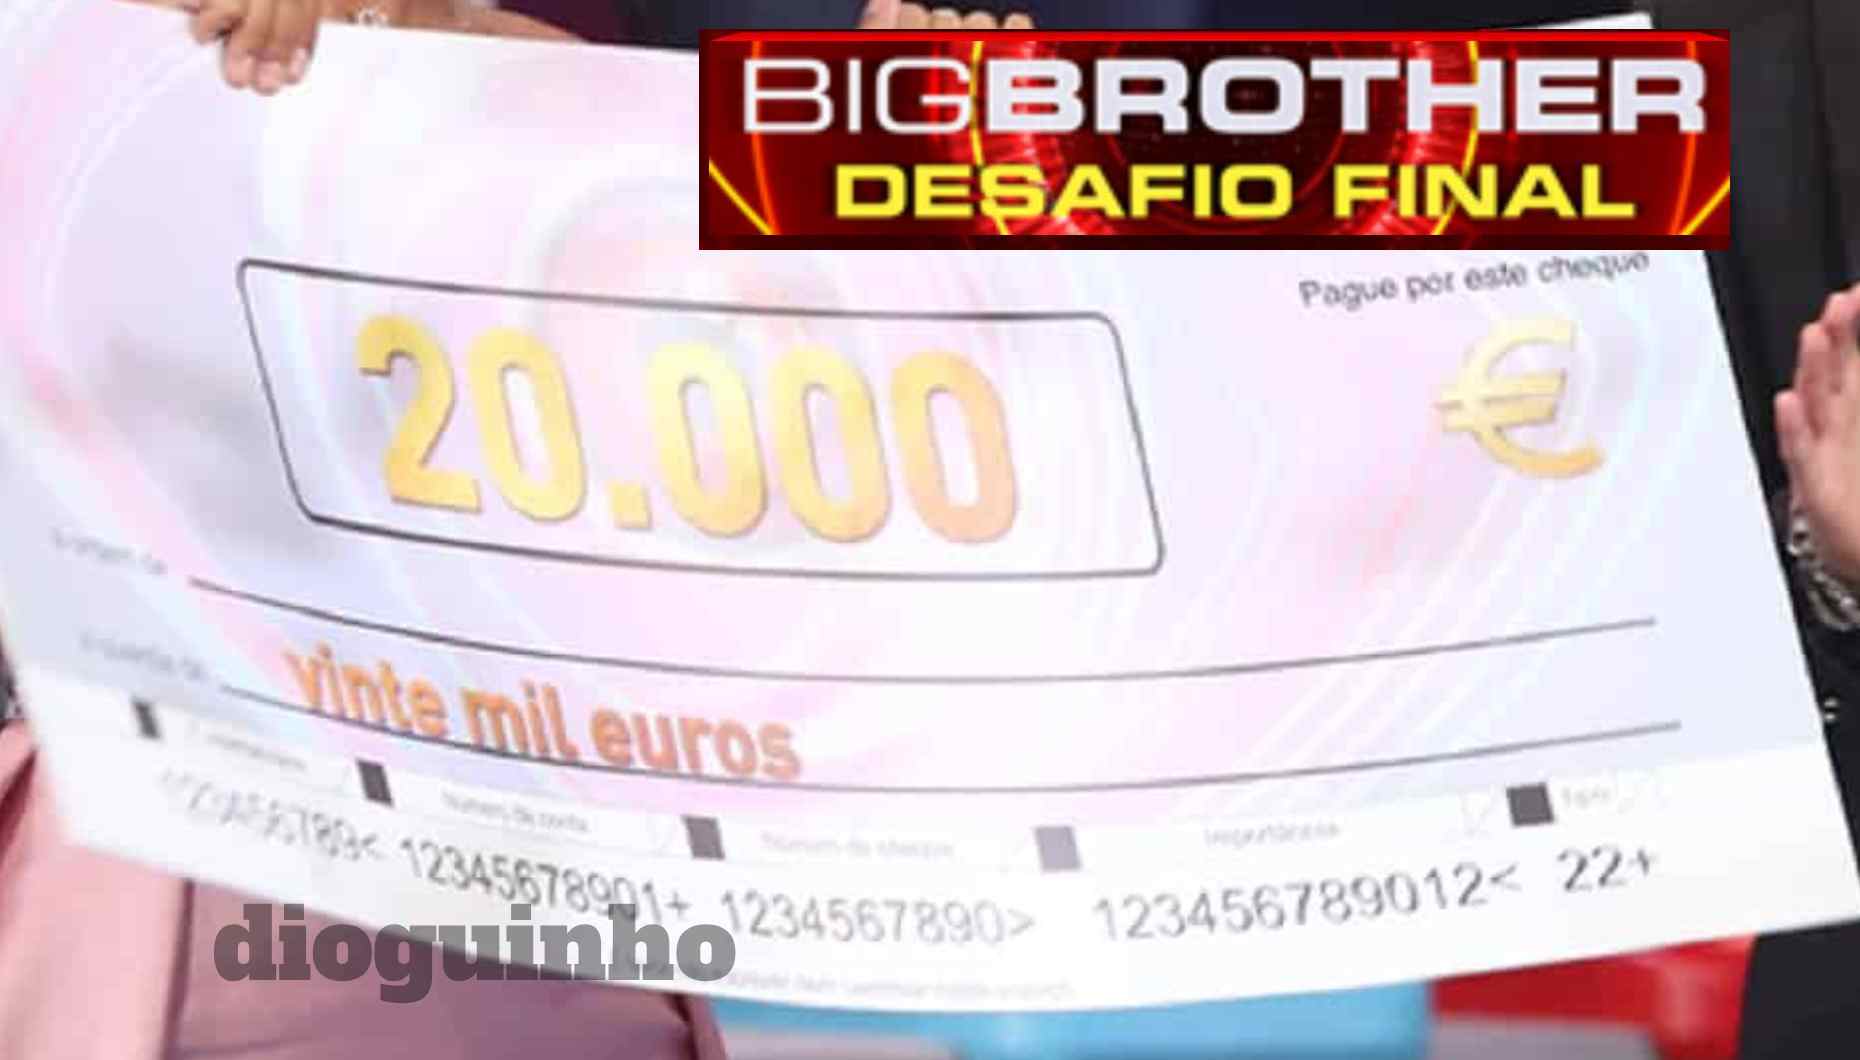 Quanto ganham todos os finalistas do Big Brother - Desafio Final